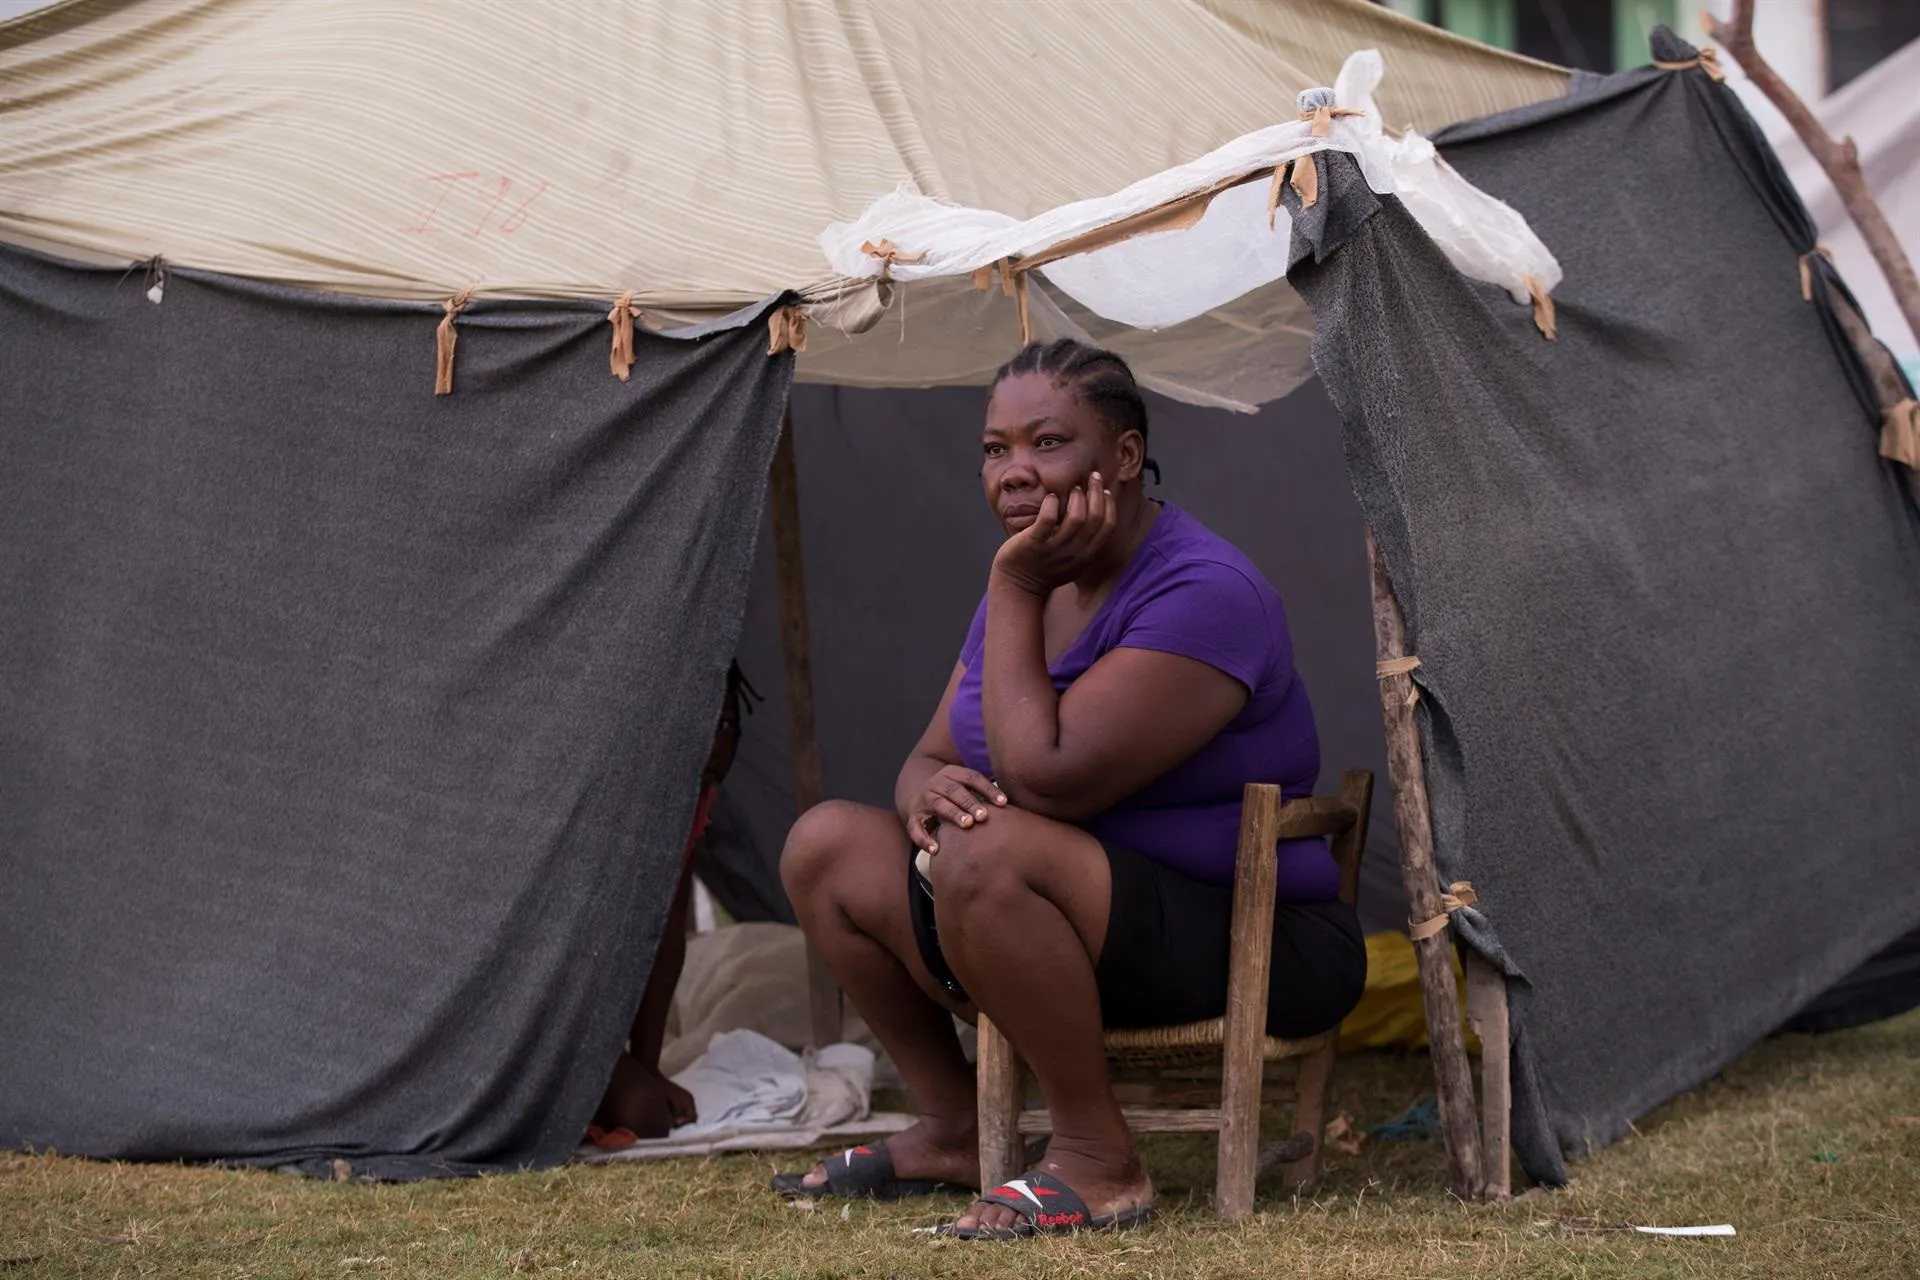 Unicef alerta del incremento de secuestros de mujeres y niños en Haití